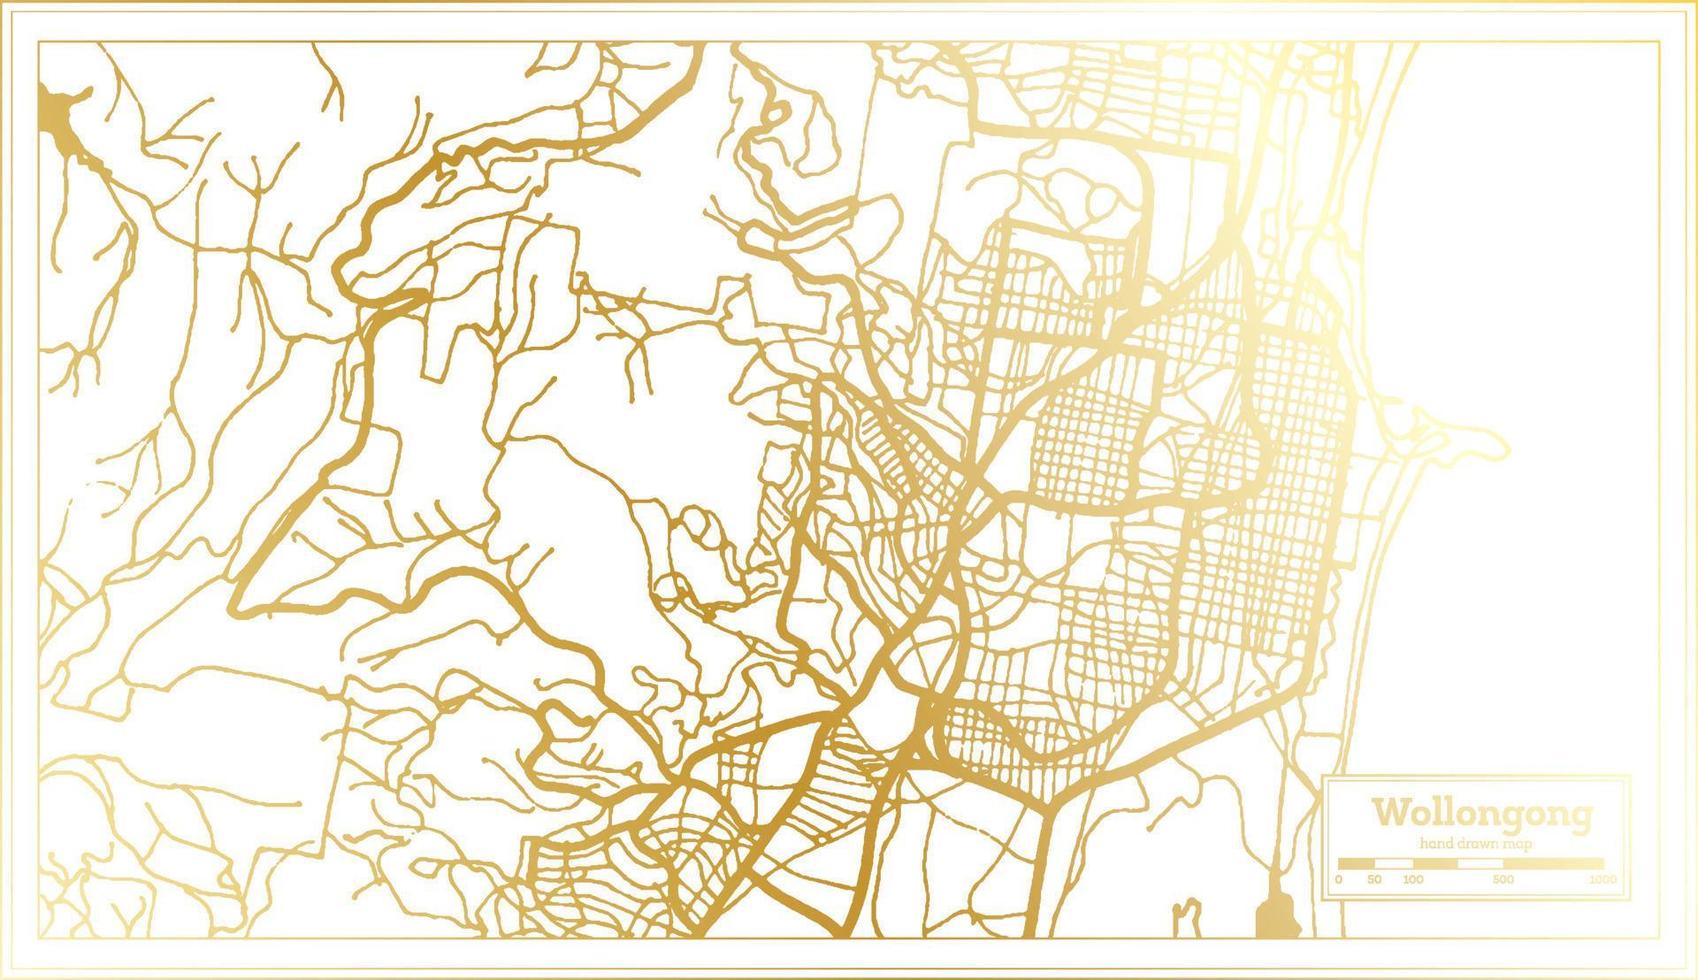 mapa de la ciudad de wollongong australia en estilo retro en color dorado. esquema del mapa. vector